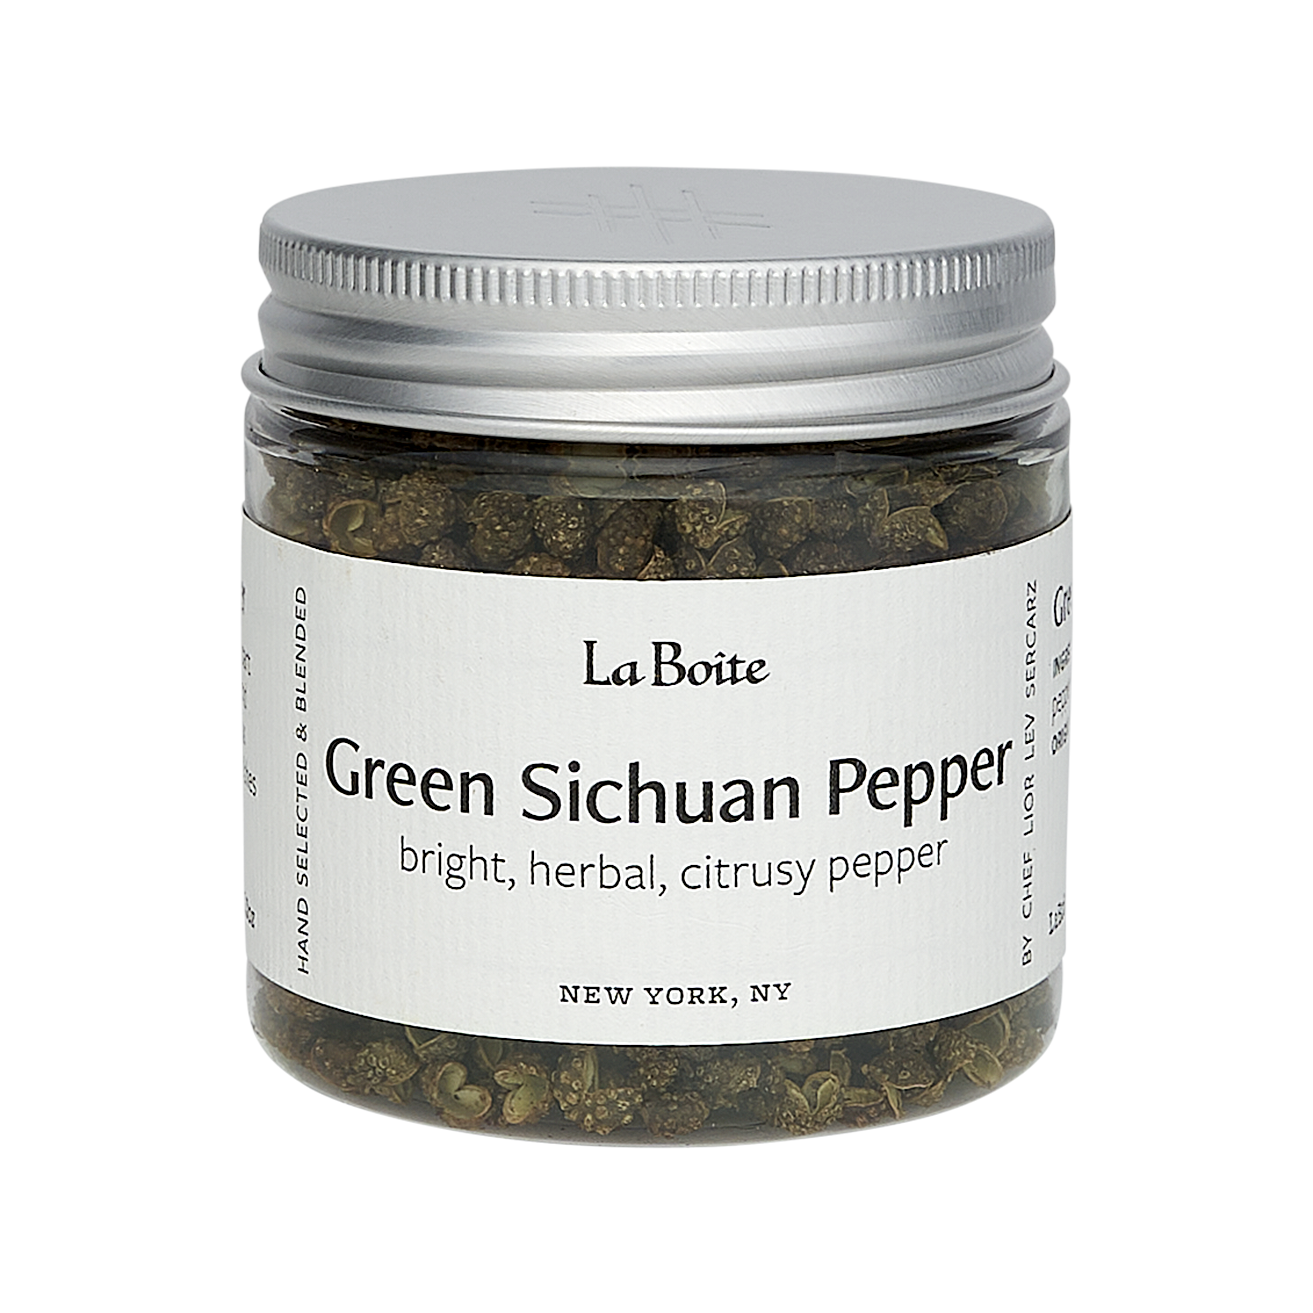 Green Sichuan Pepper